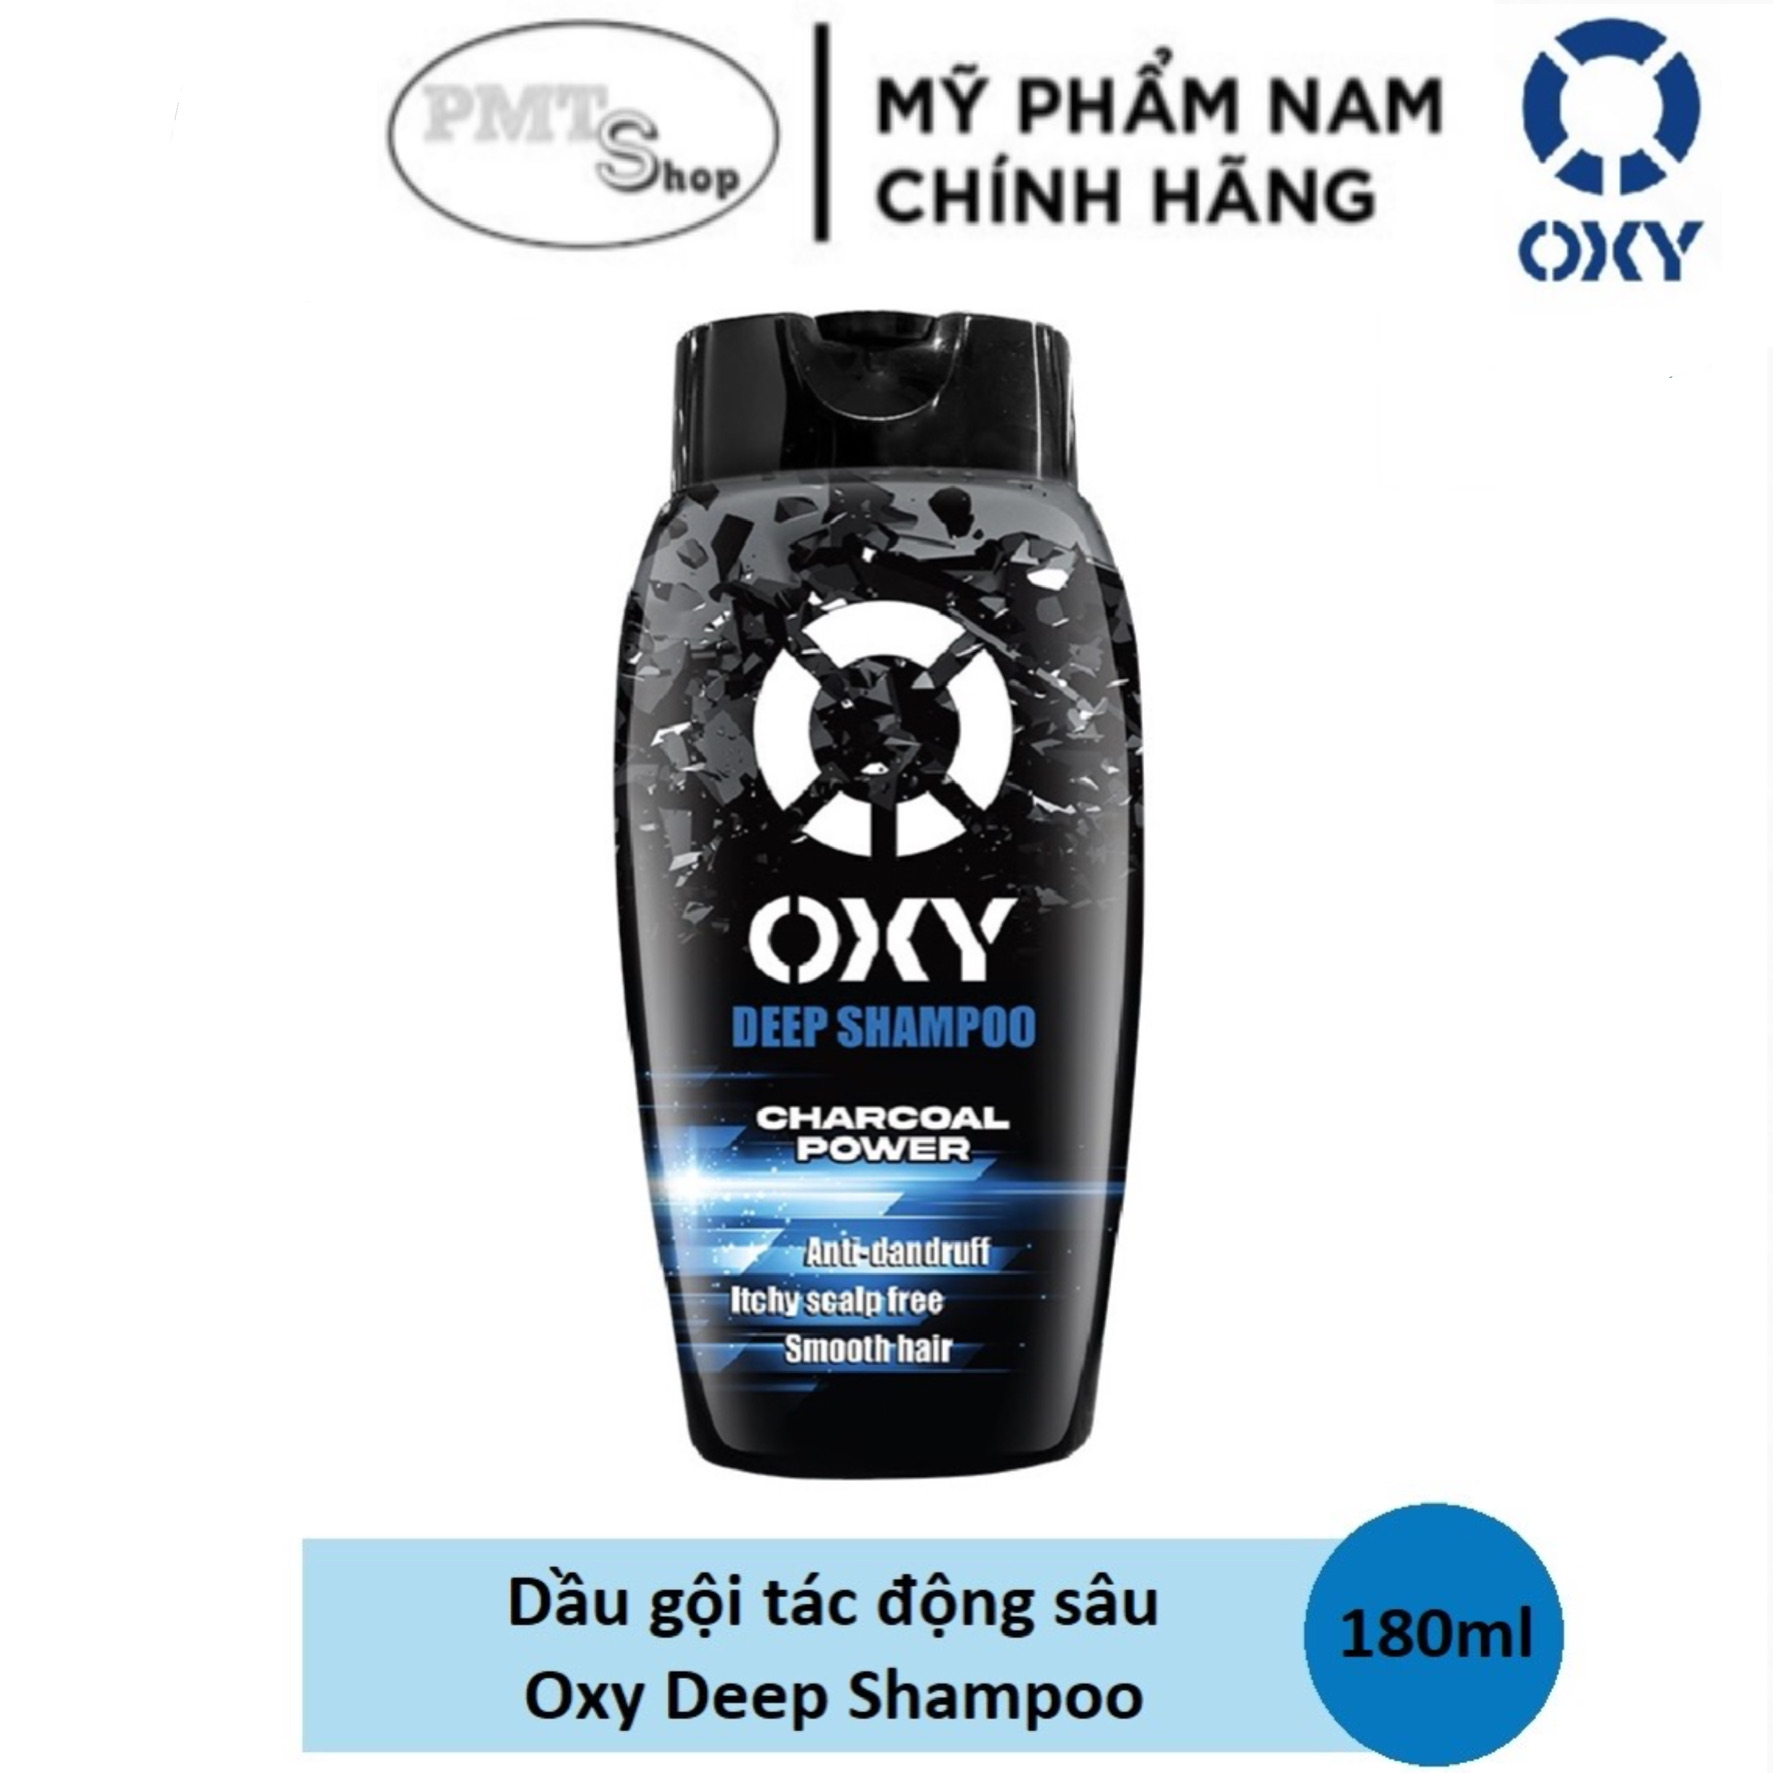 Dầu gội tác động sâu cho nam giới Oxy Deep Shampoo Charcoal Power 180ml thumbnail